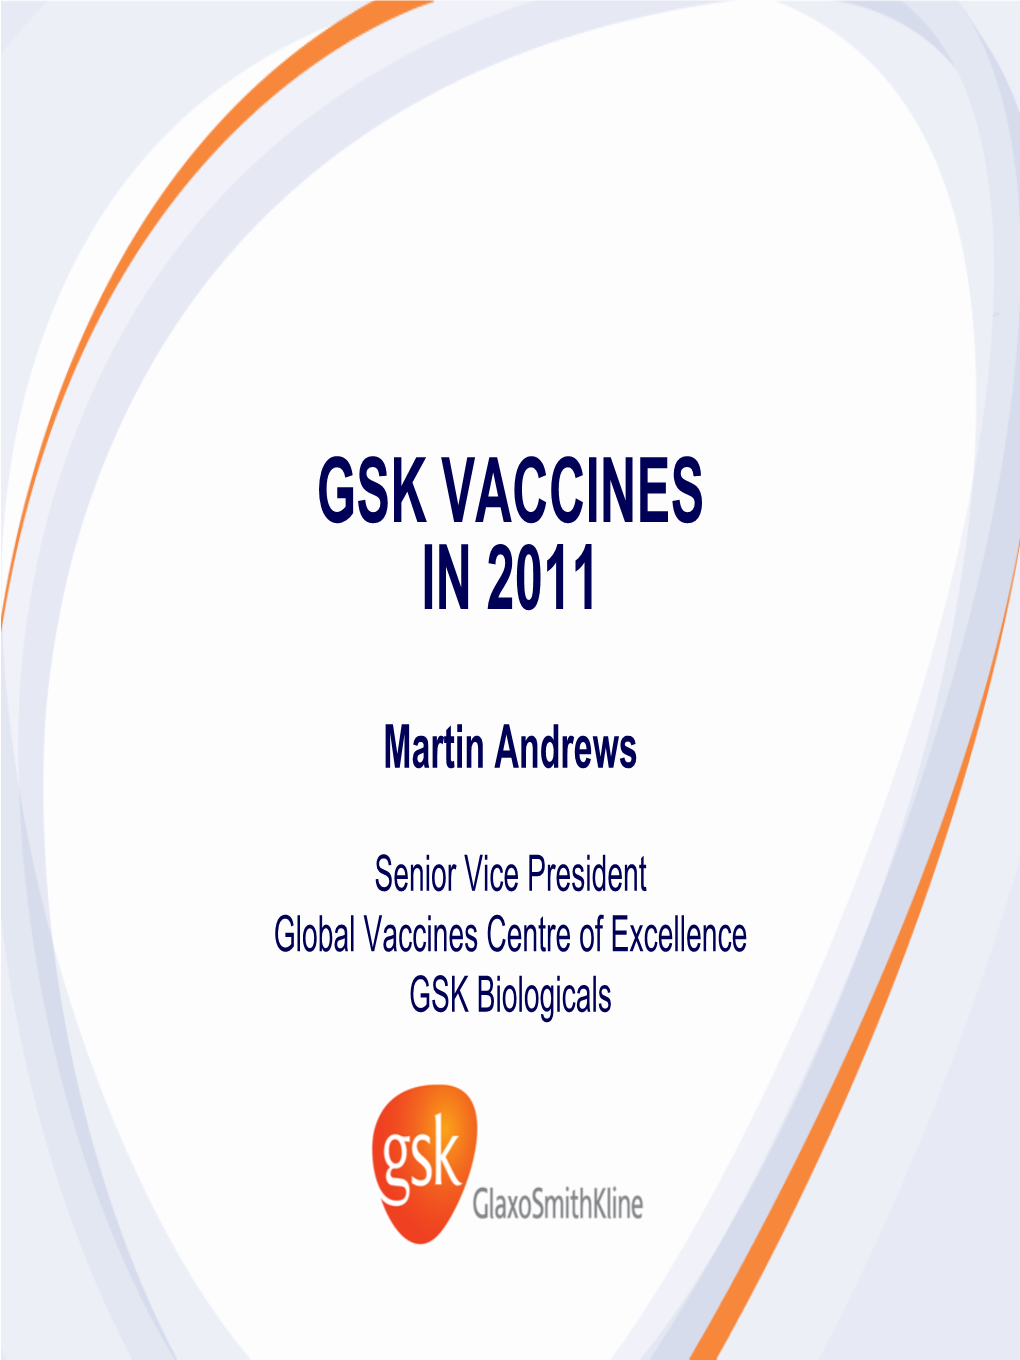 Gsk Vaccines in 2011